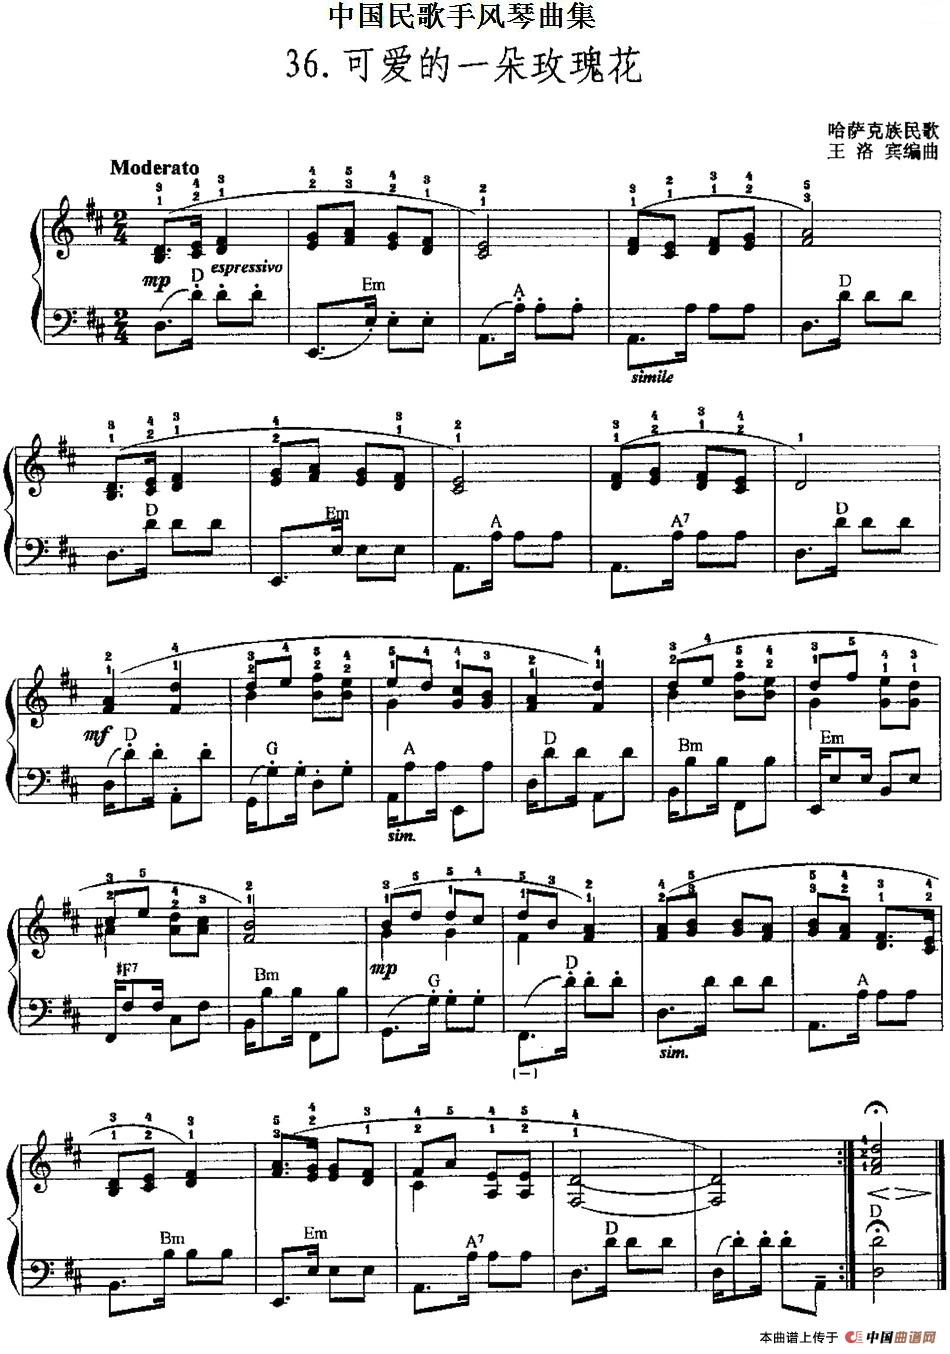 中国民歌手风琴曲集：36、可爱的一朵玫瑰花手风琴谱（线简谱对照、带指法版）